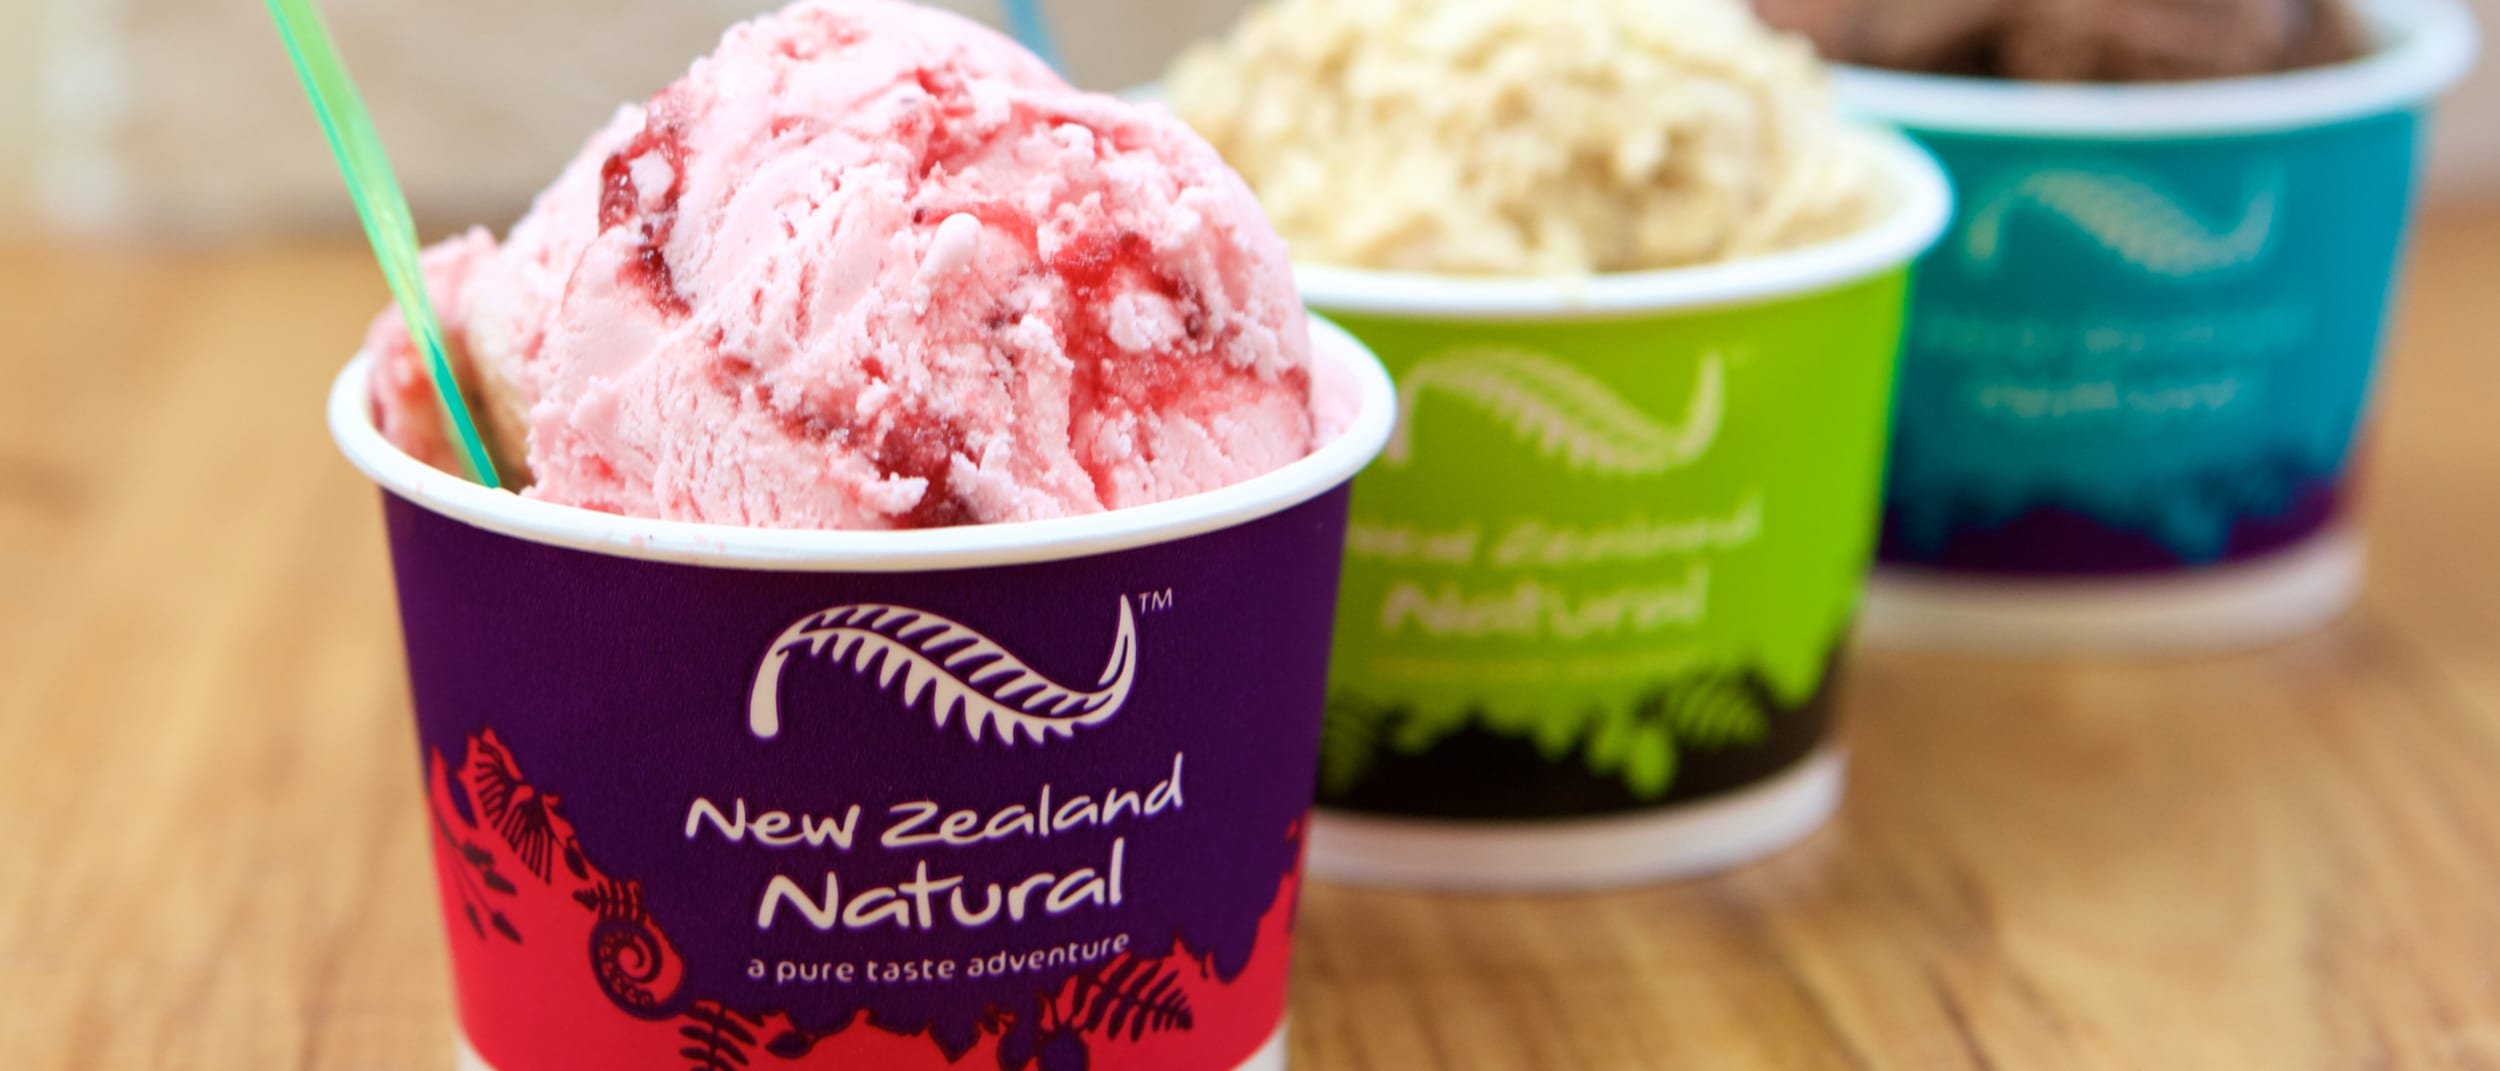 Ice cream new. Новозеландское мороженое. Мороженое в ведре. Мороженое с пробиотиками.